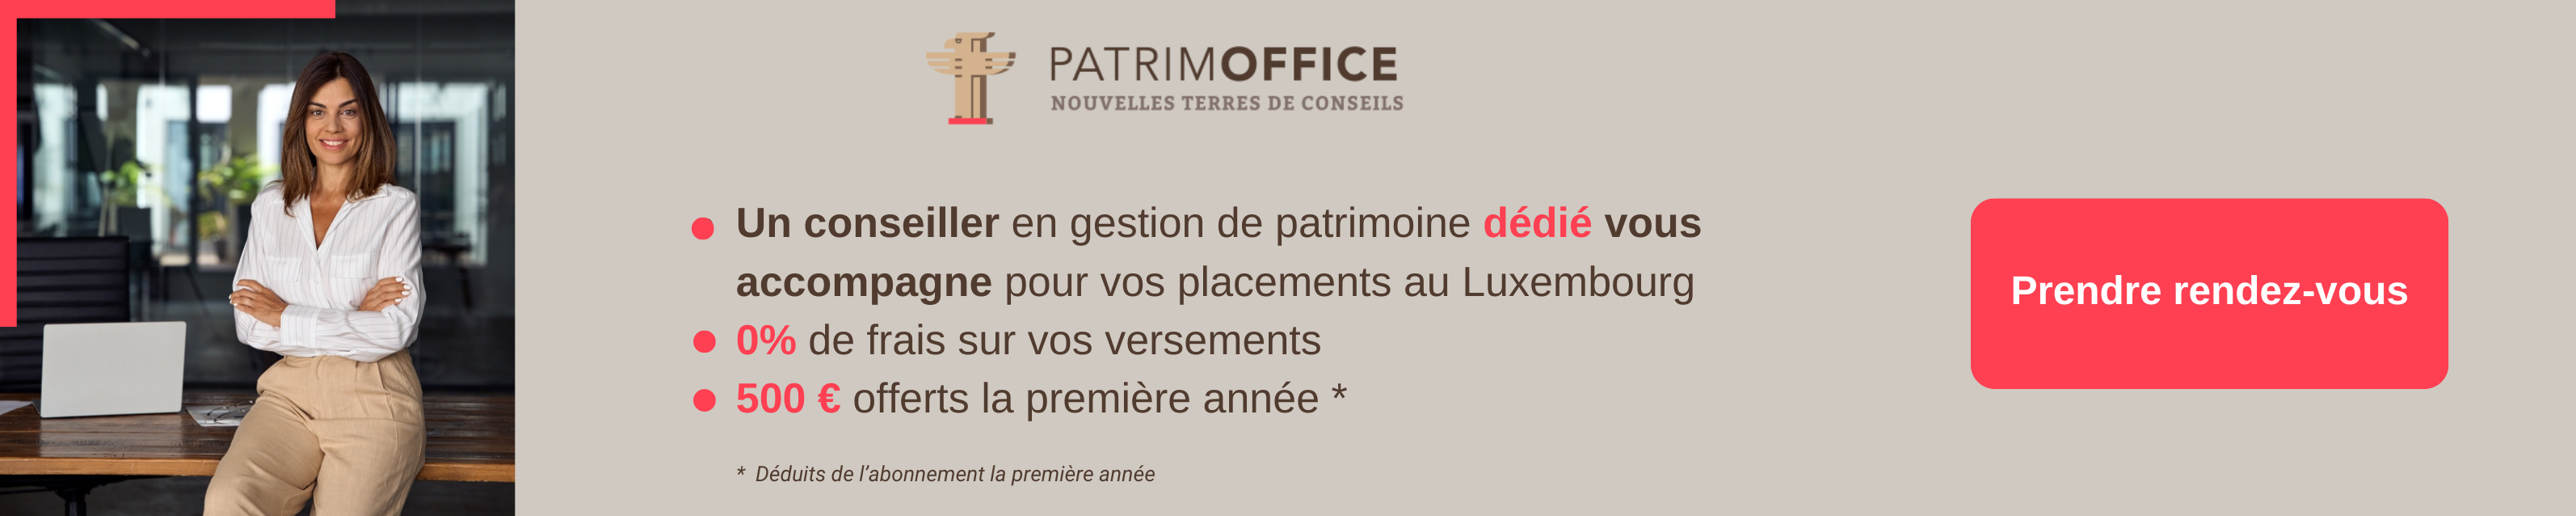 Bannière Patrimoffice conseil placements luxembourg